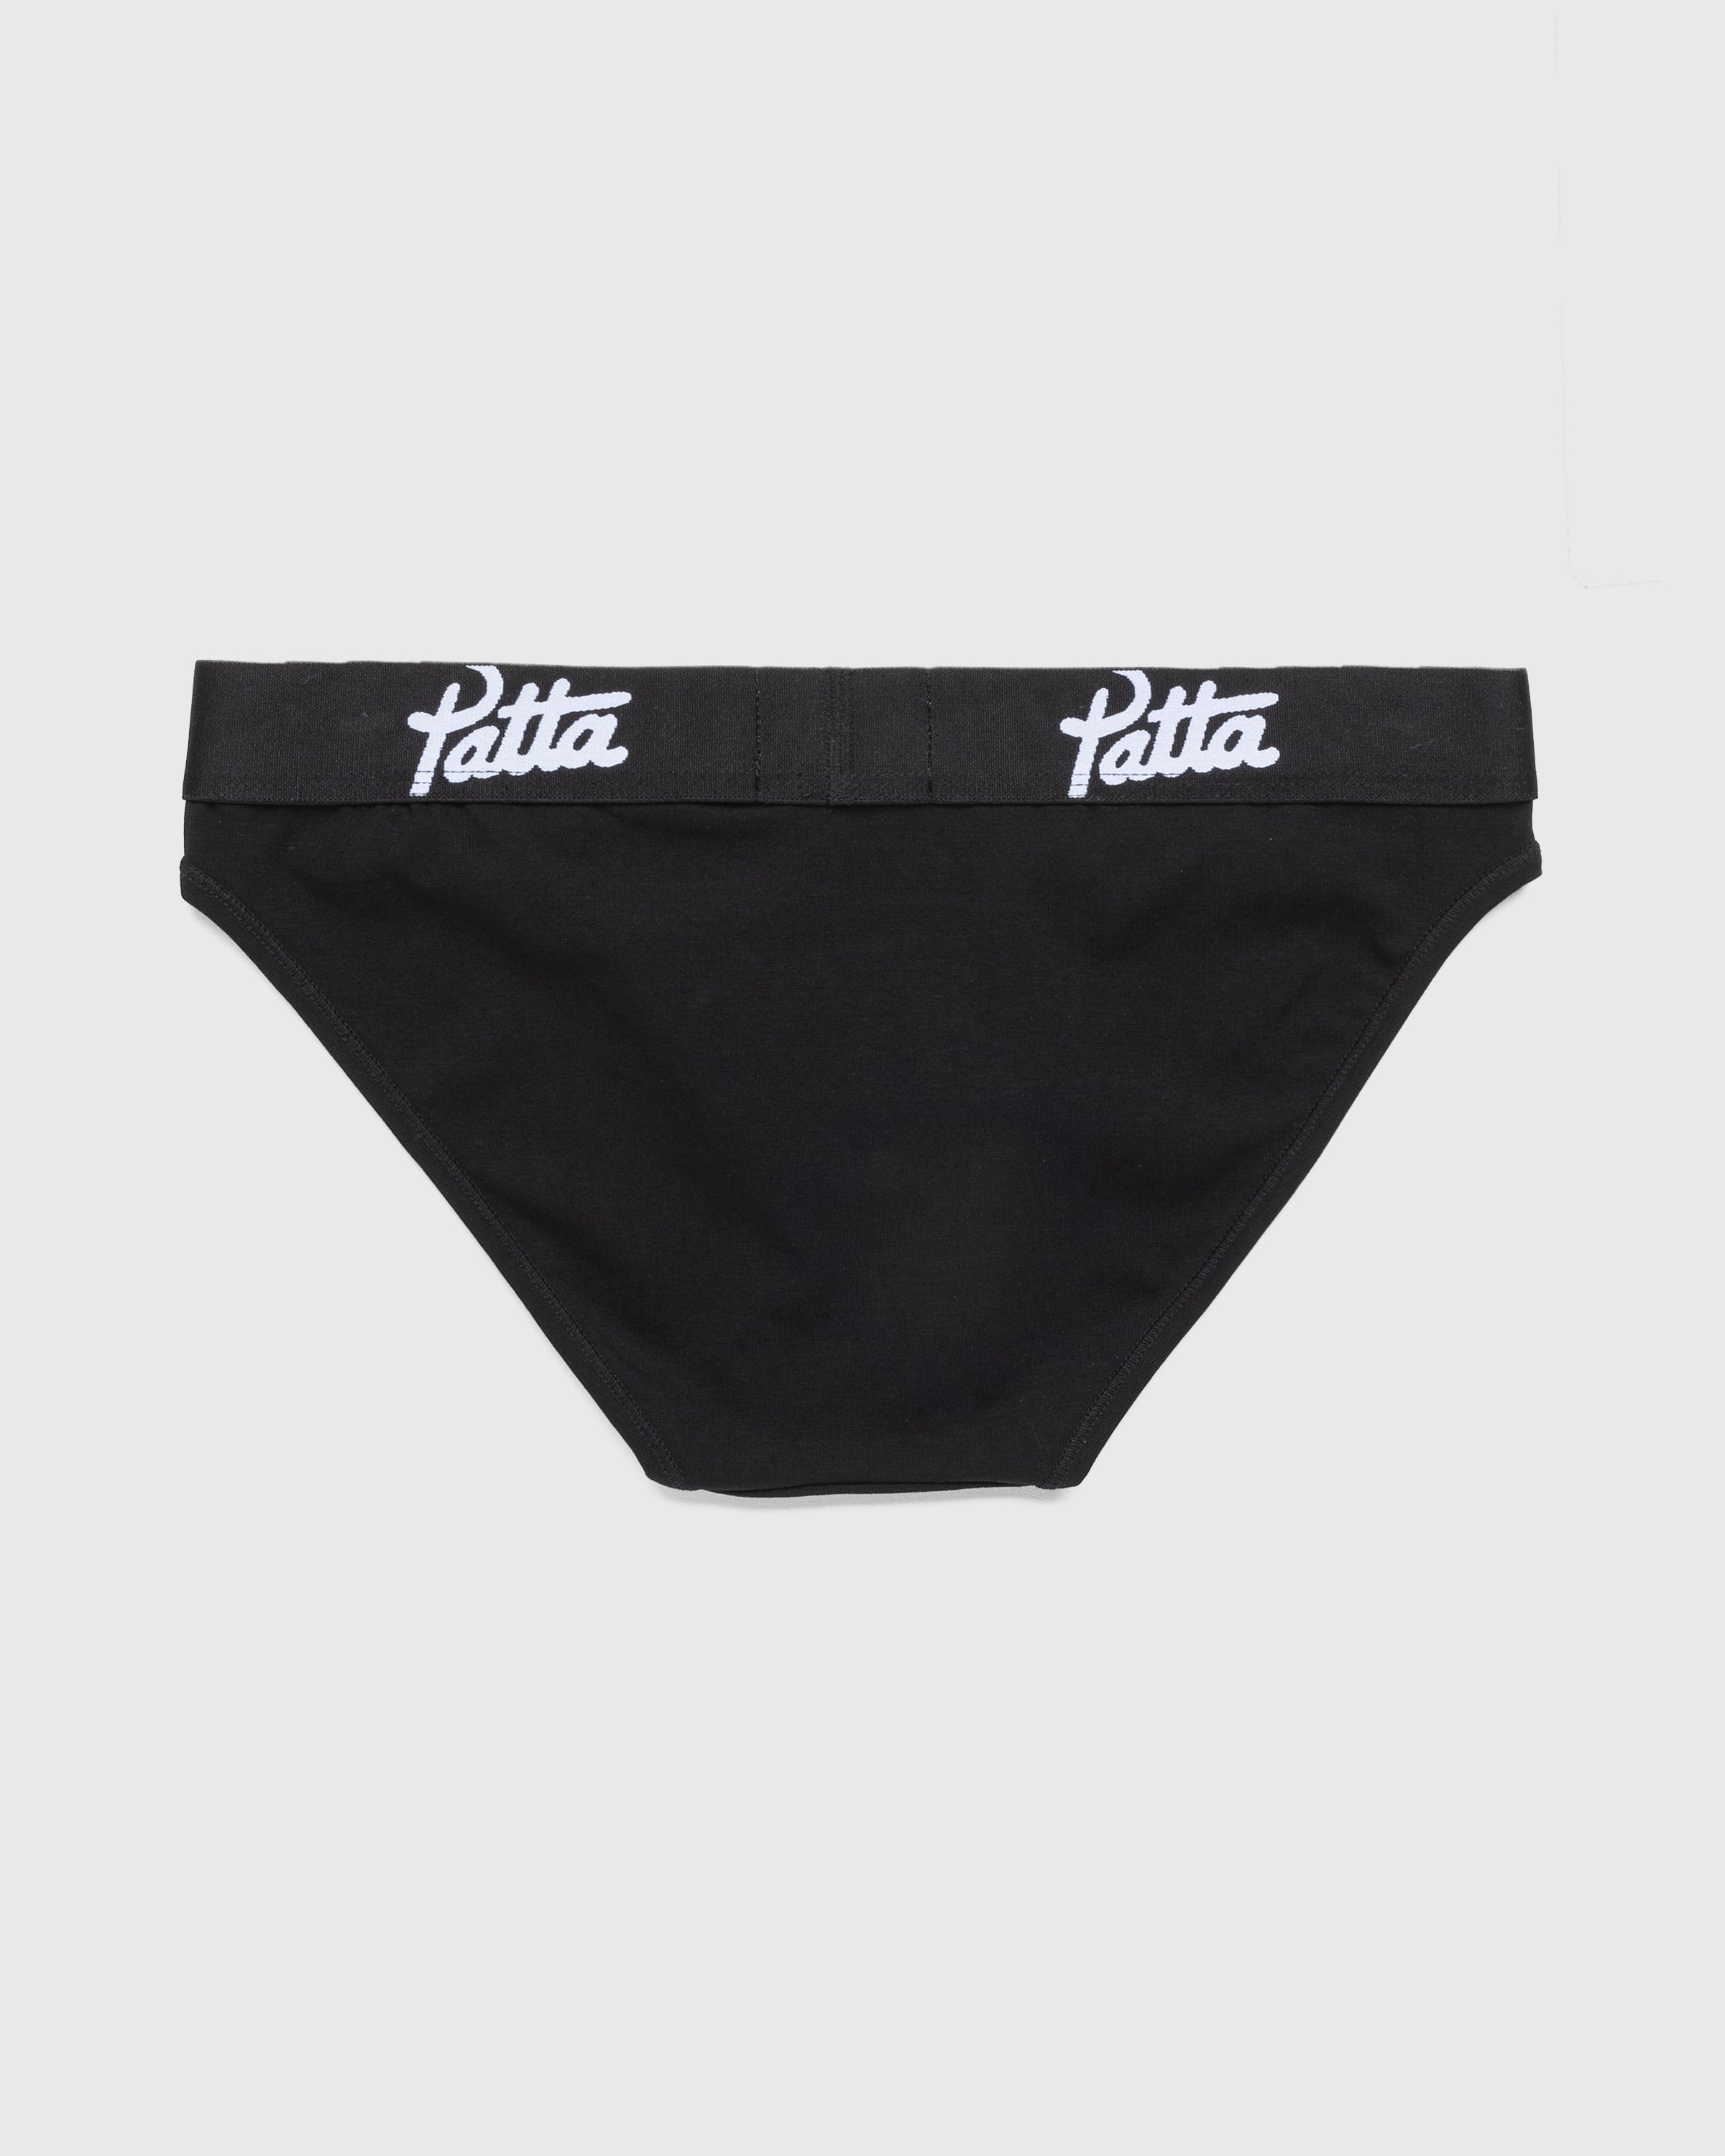 Patta - Women’s Underwear Brief Black - Clothing - Black - Image 2